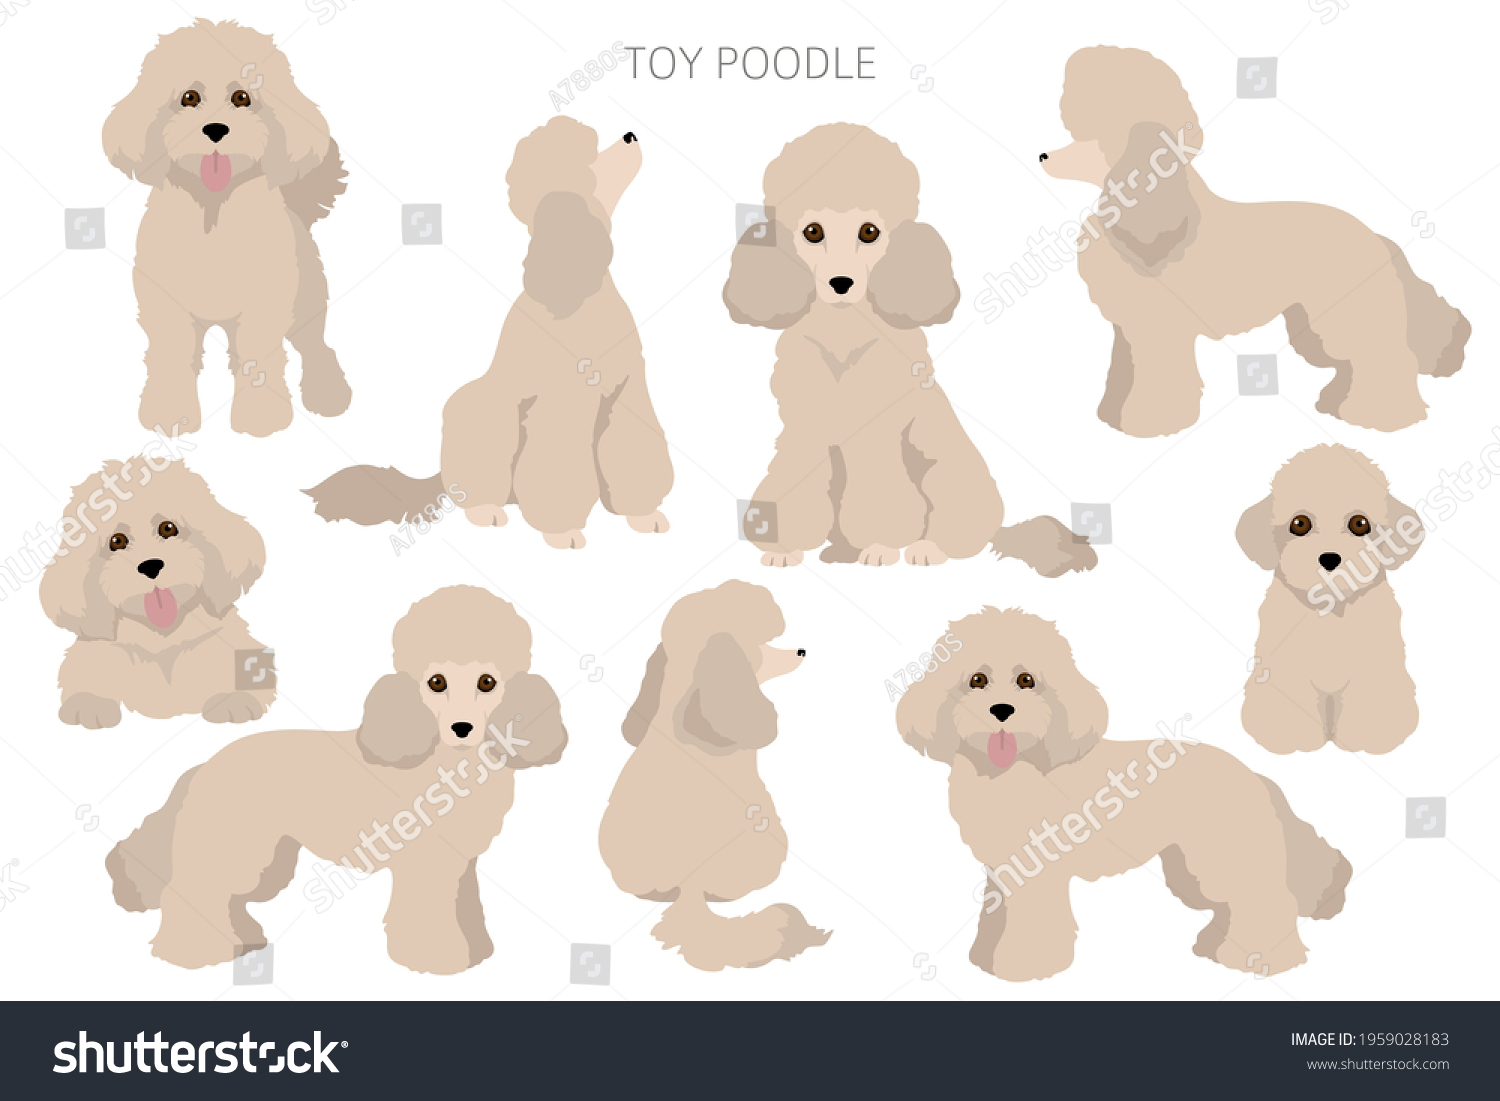 Toy Poodle Clipart Different Poses Coat: стоковая векторная графика (без ли...